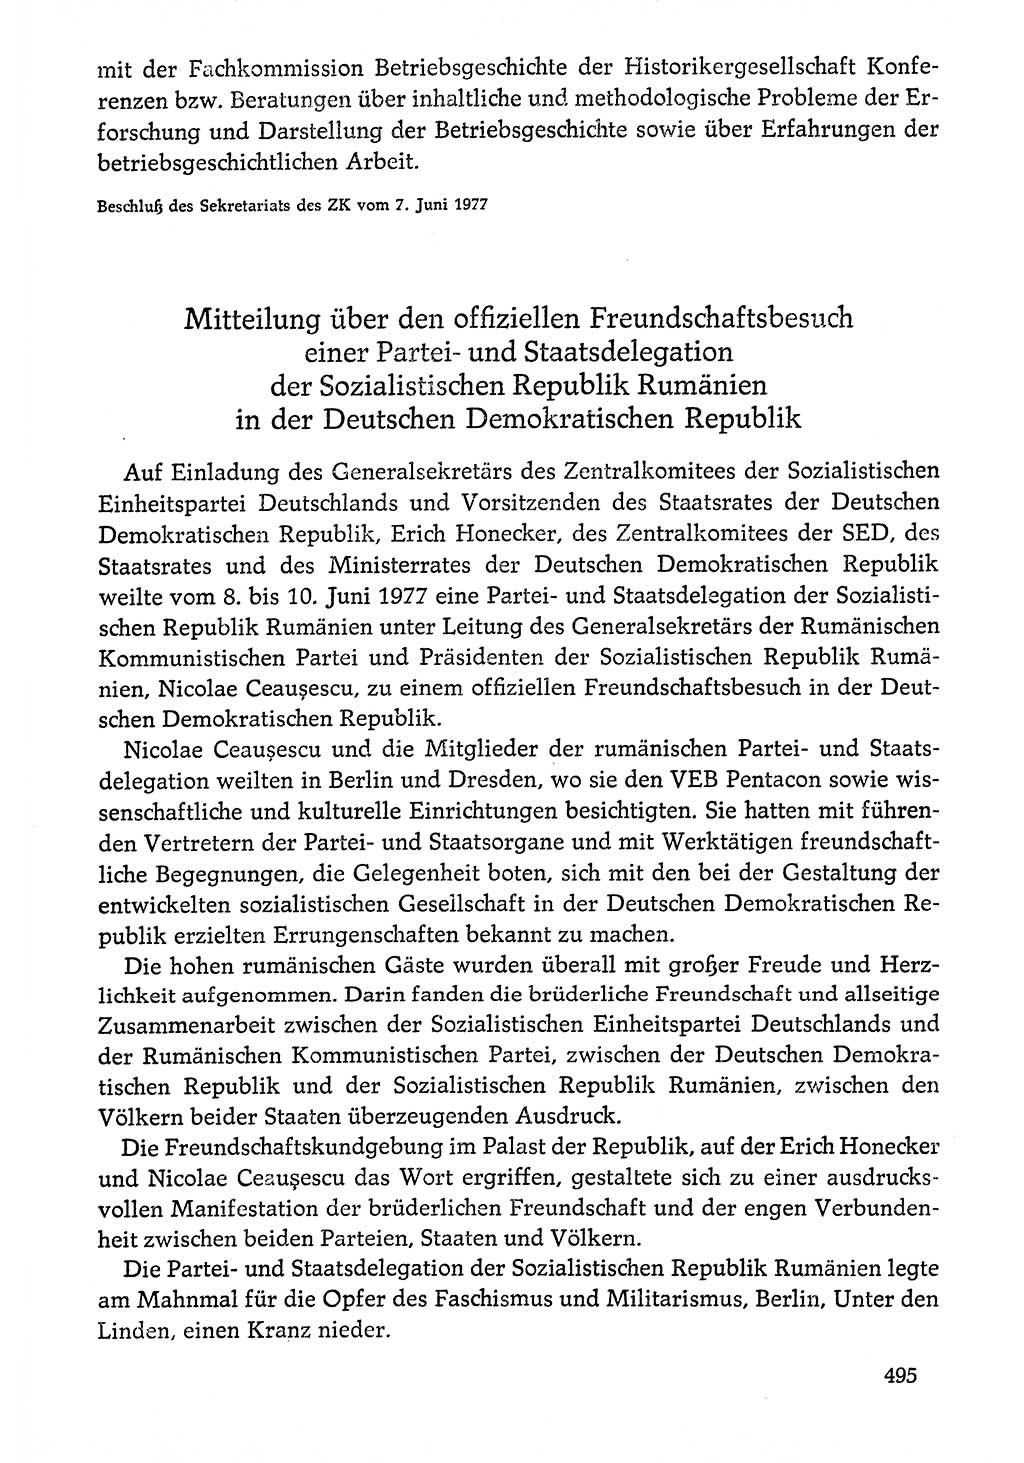 Dokumente der Sozialistischen Einheitspartei Deutschlands (SED) [Deutsche Demokratische Republik (DDR)] 1976-1977, Seite 495 (Dok. SED DDR 1976-1977, S. 495)